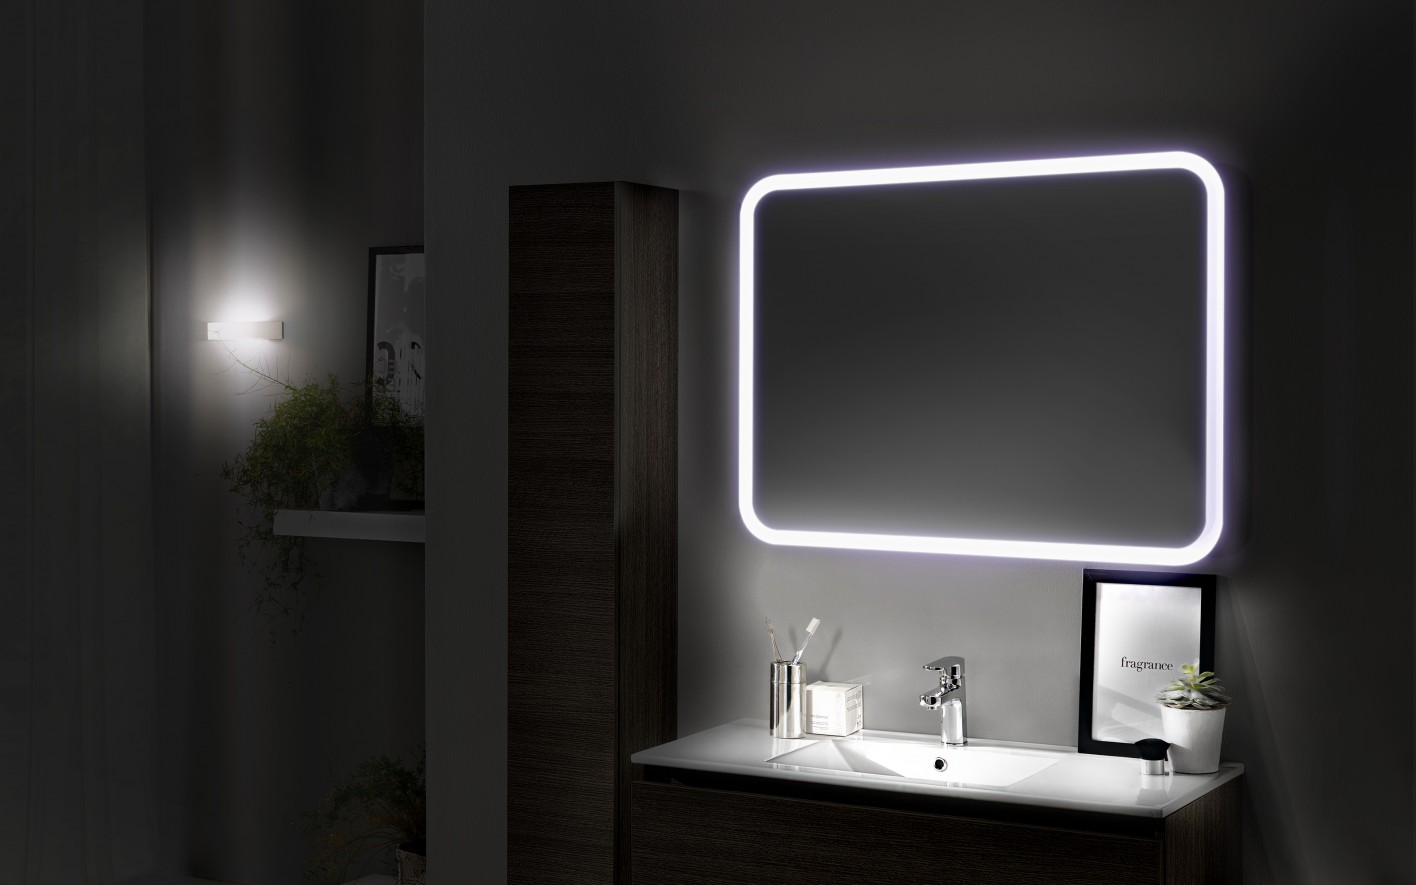 Specchio da bagno grande Specchio da parete a semicerchio Ø 100 cm Specchio  da toilette alla moda Specchio decorativo for ingressi HD Specchio for  trucco antideflagrante (Colore: Punch Hole, Dimension : 